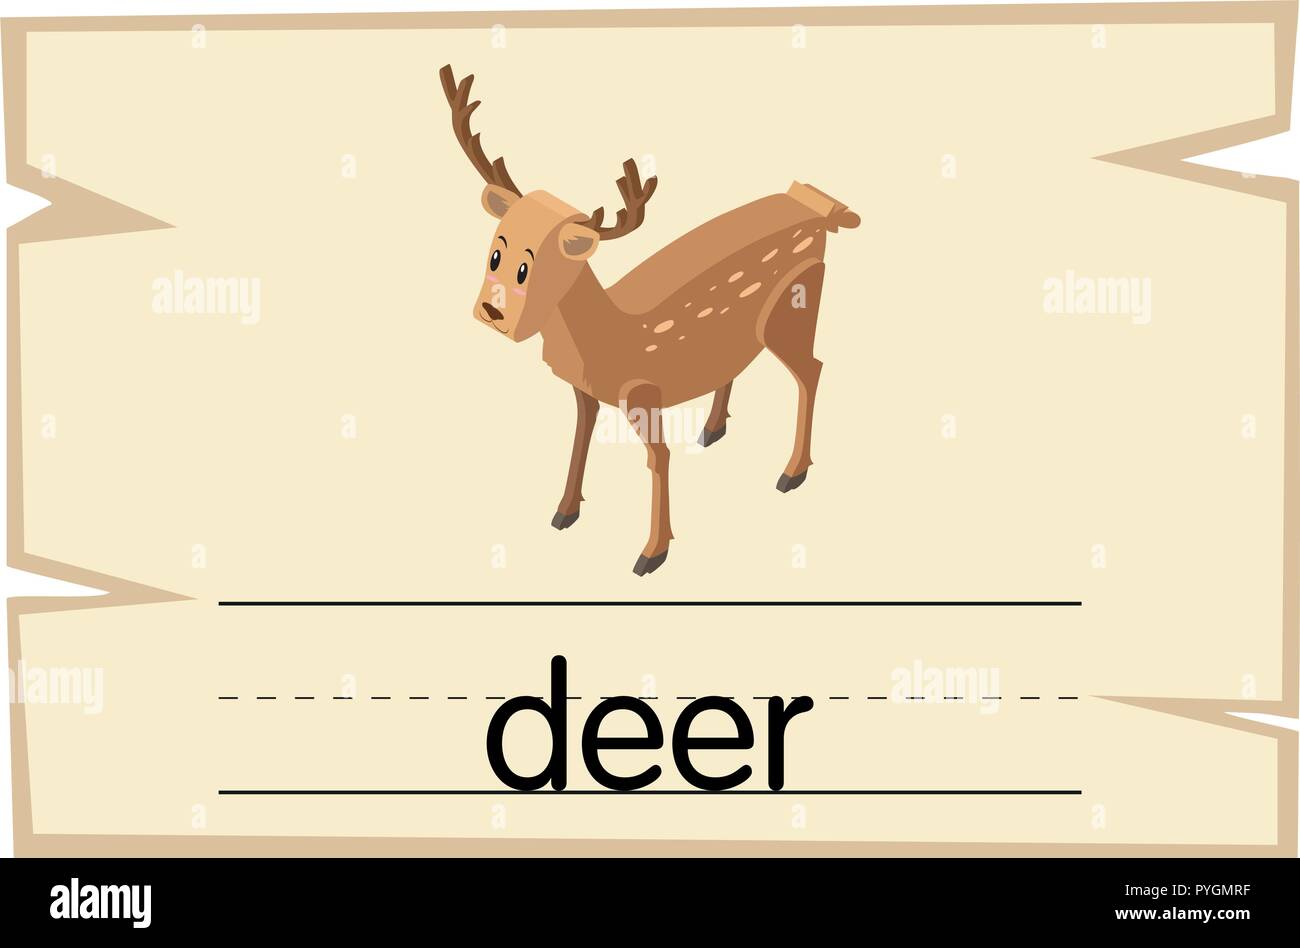 What word is deer?